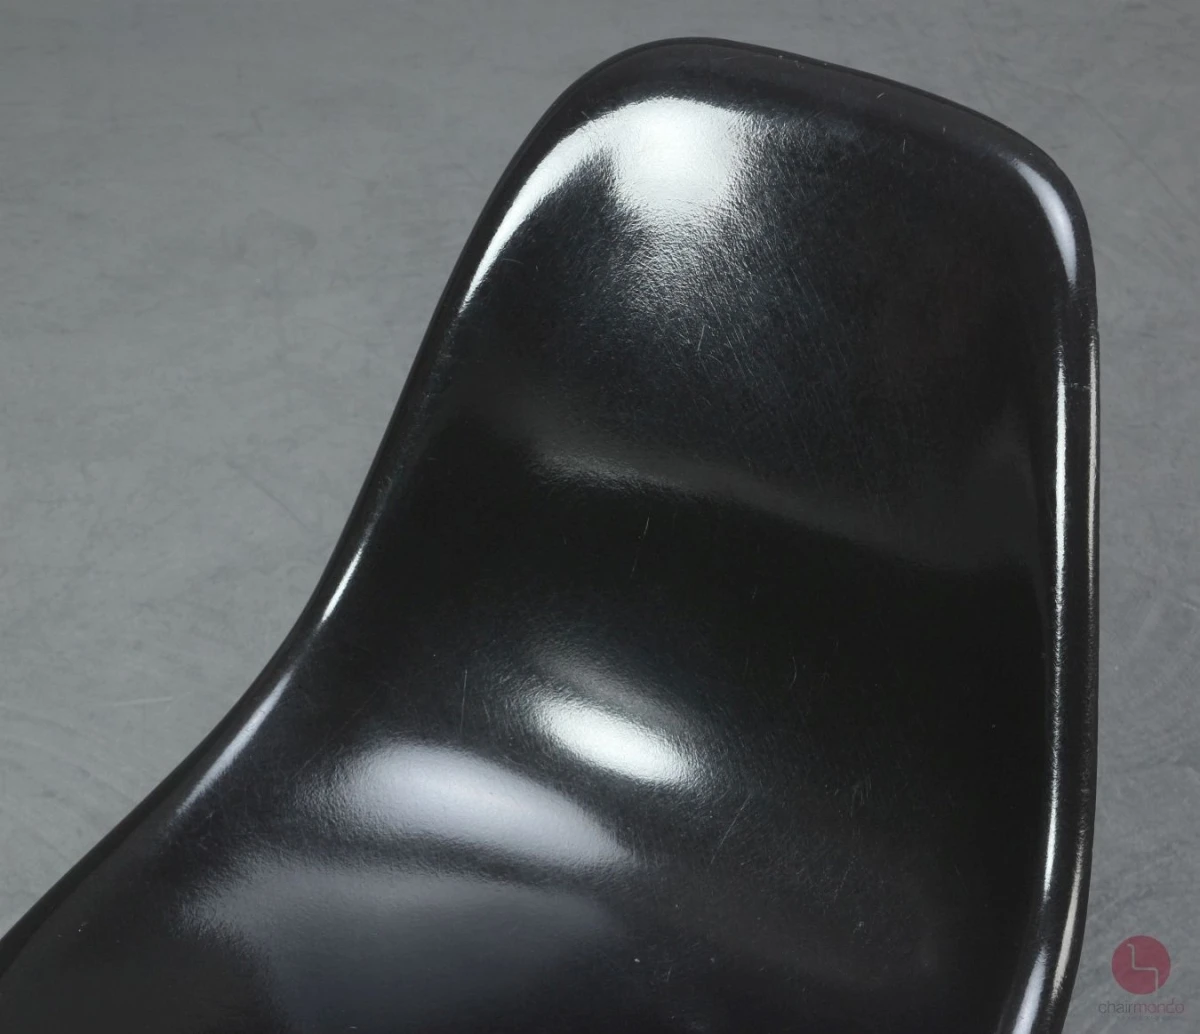 Vitra Eames DSW Side Chair Fiberglas Hermann Miller Schwarz Ahorngestell gebraucht